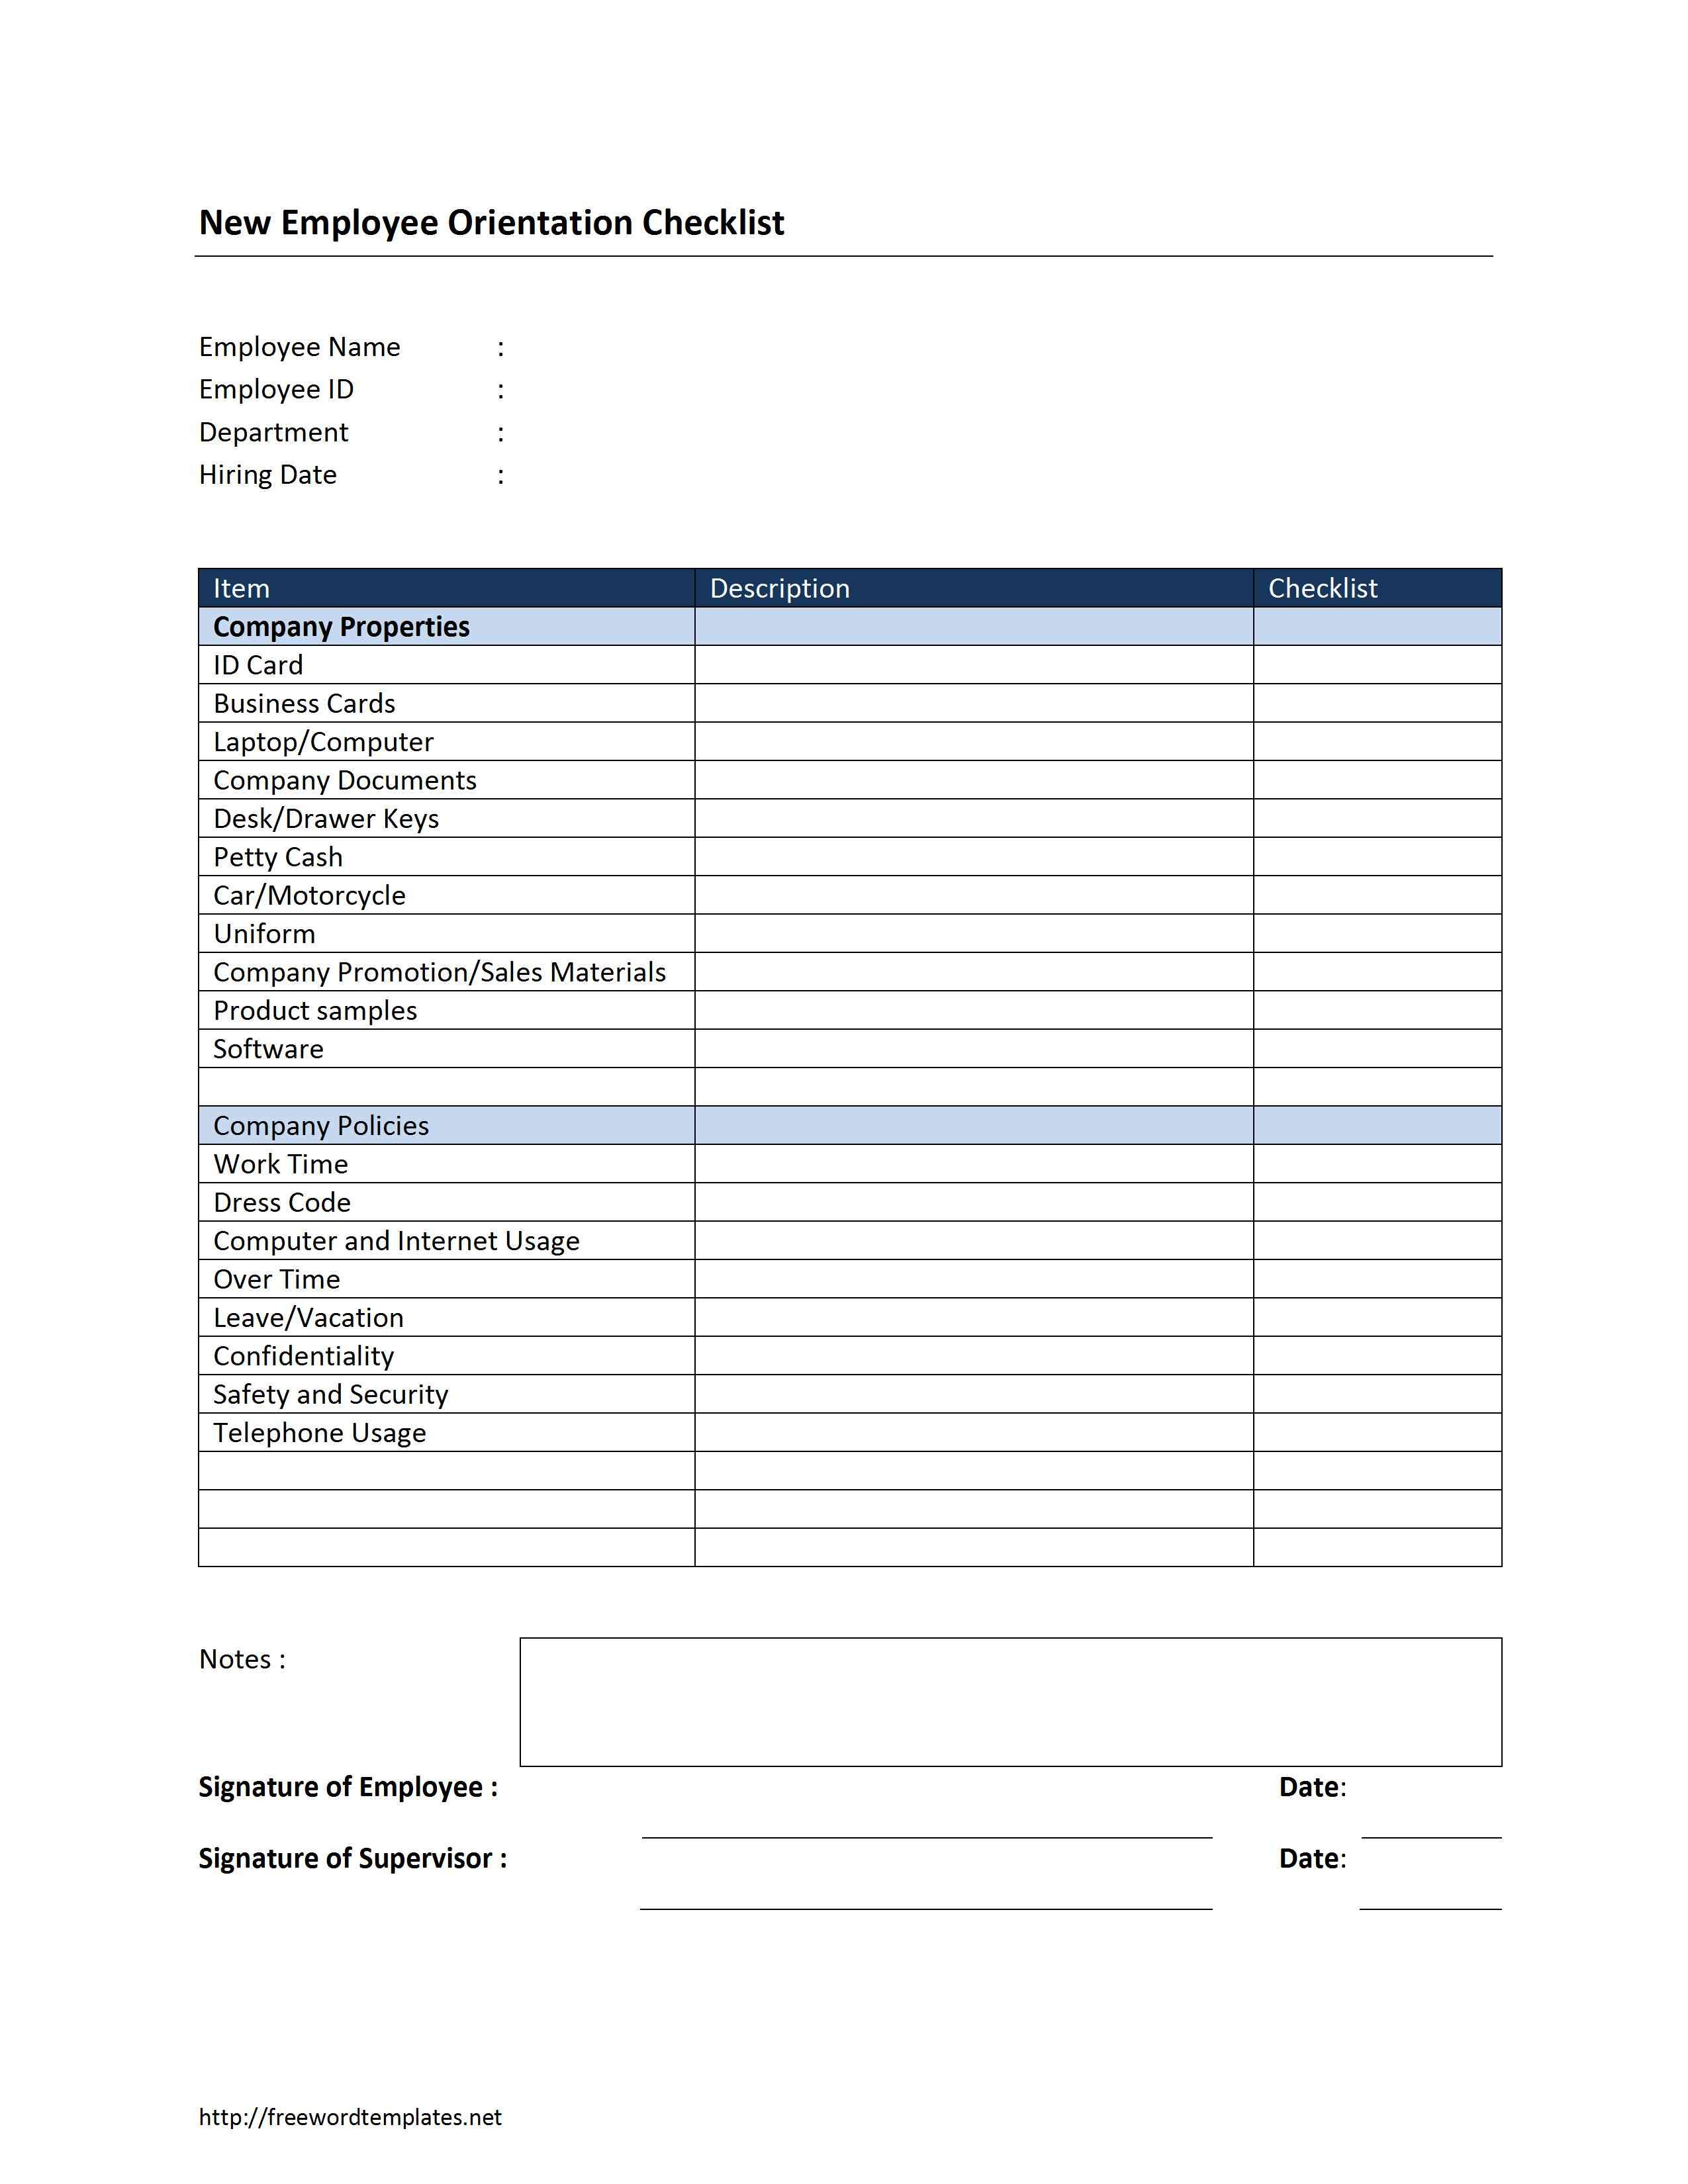 New Employee Checklist Template Excel New Employee orientation Checklist